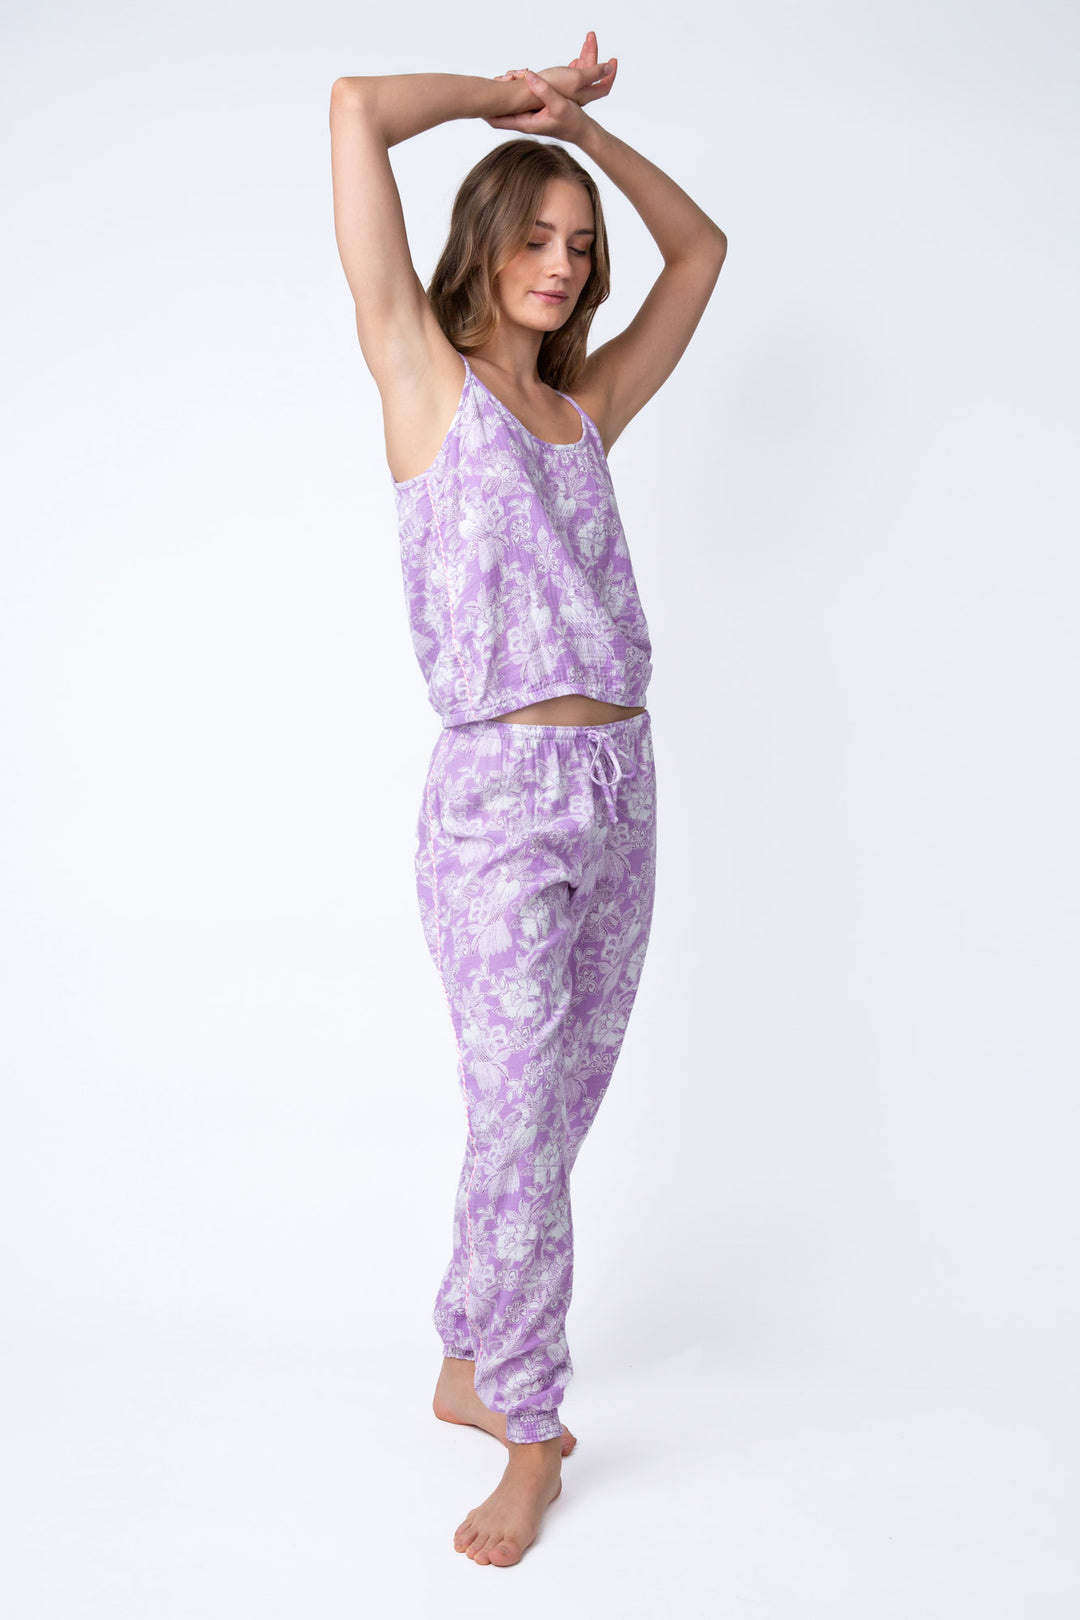 Cotton gauze women's lounge set pant & camisole top, in pale purple floral.